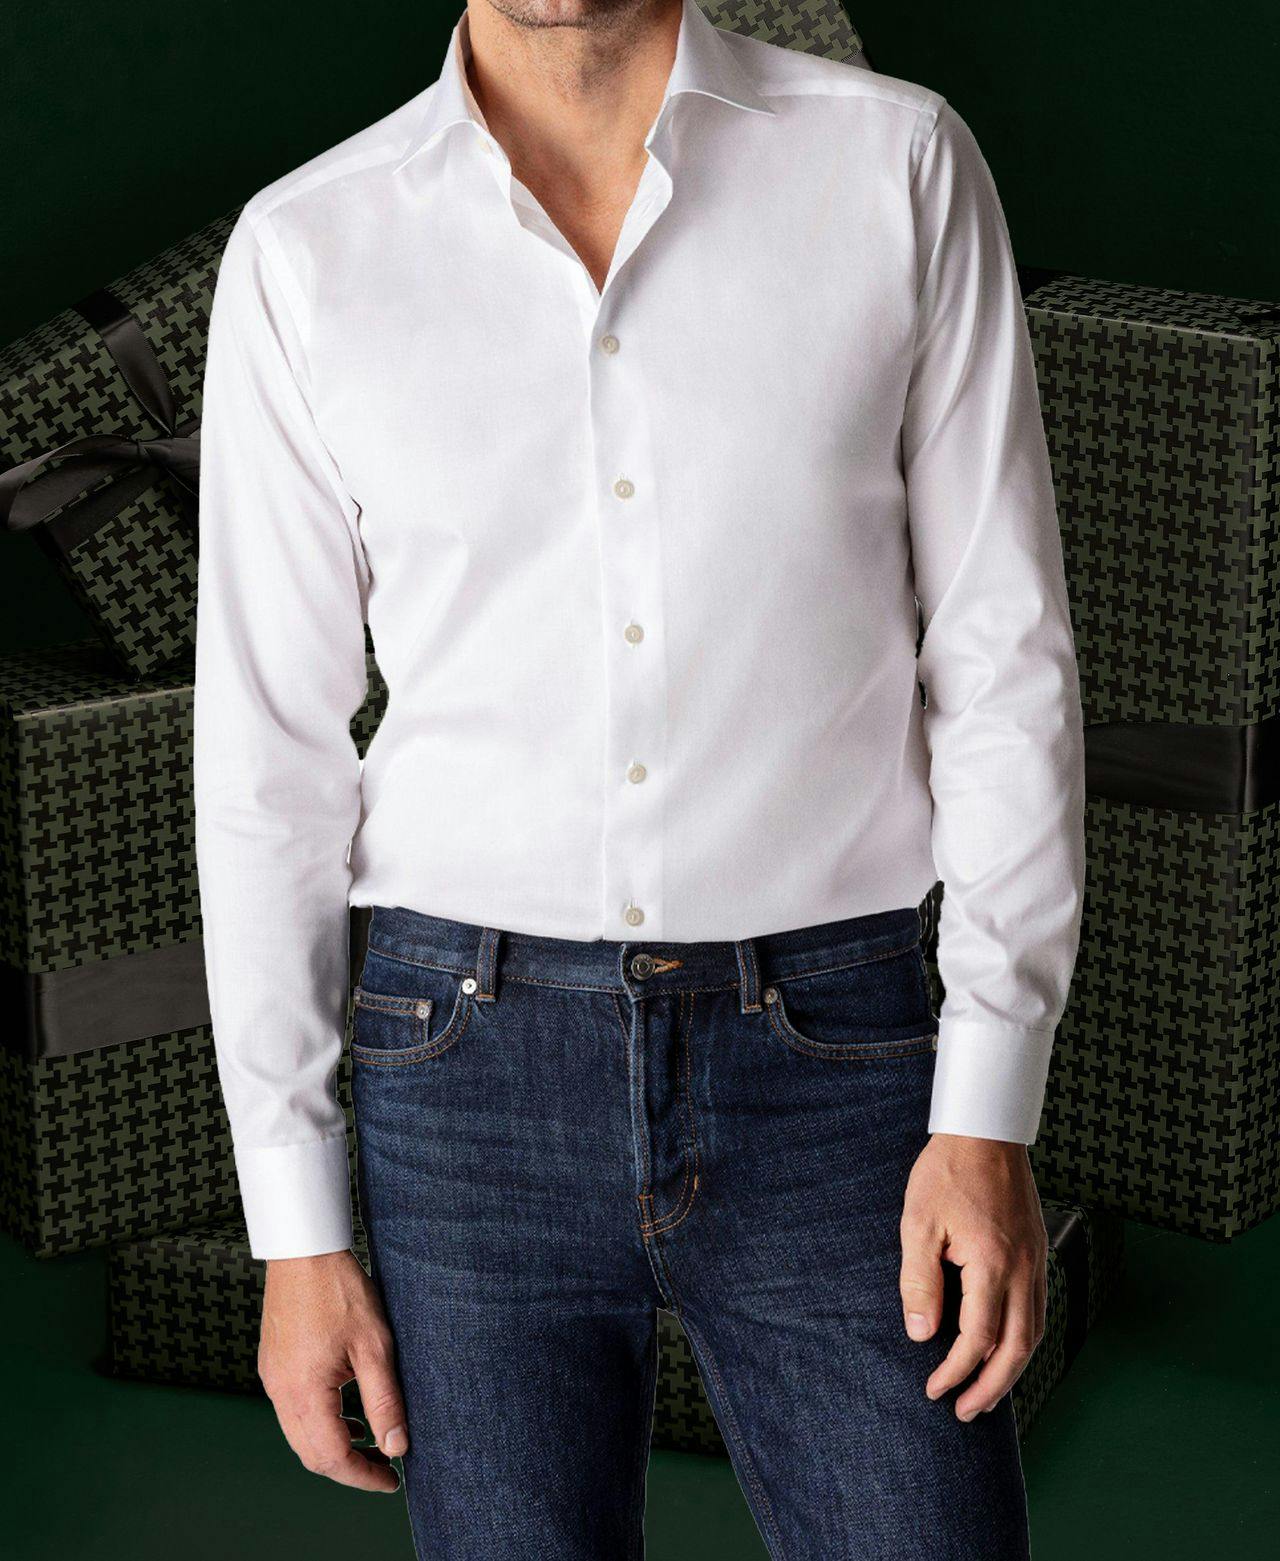 Mannequin masculin présentant chemise blanche et jean bleu sur fond vert foncé